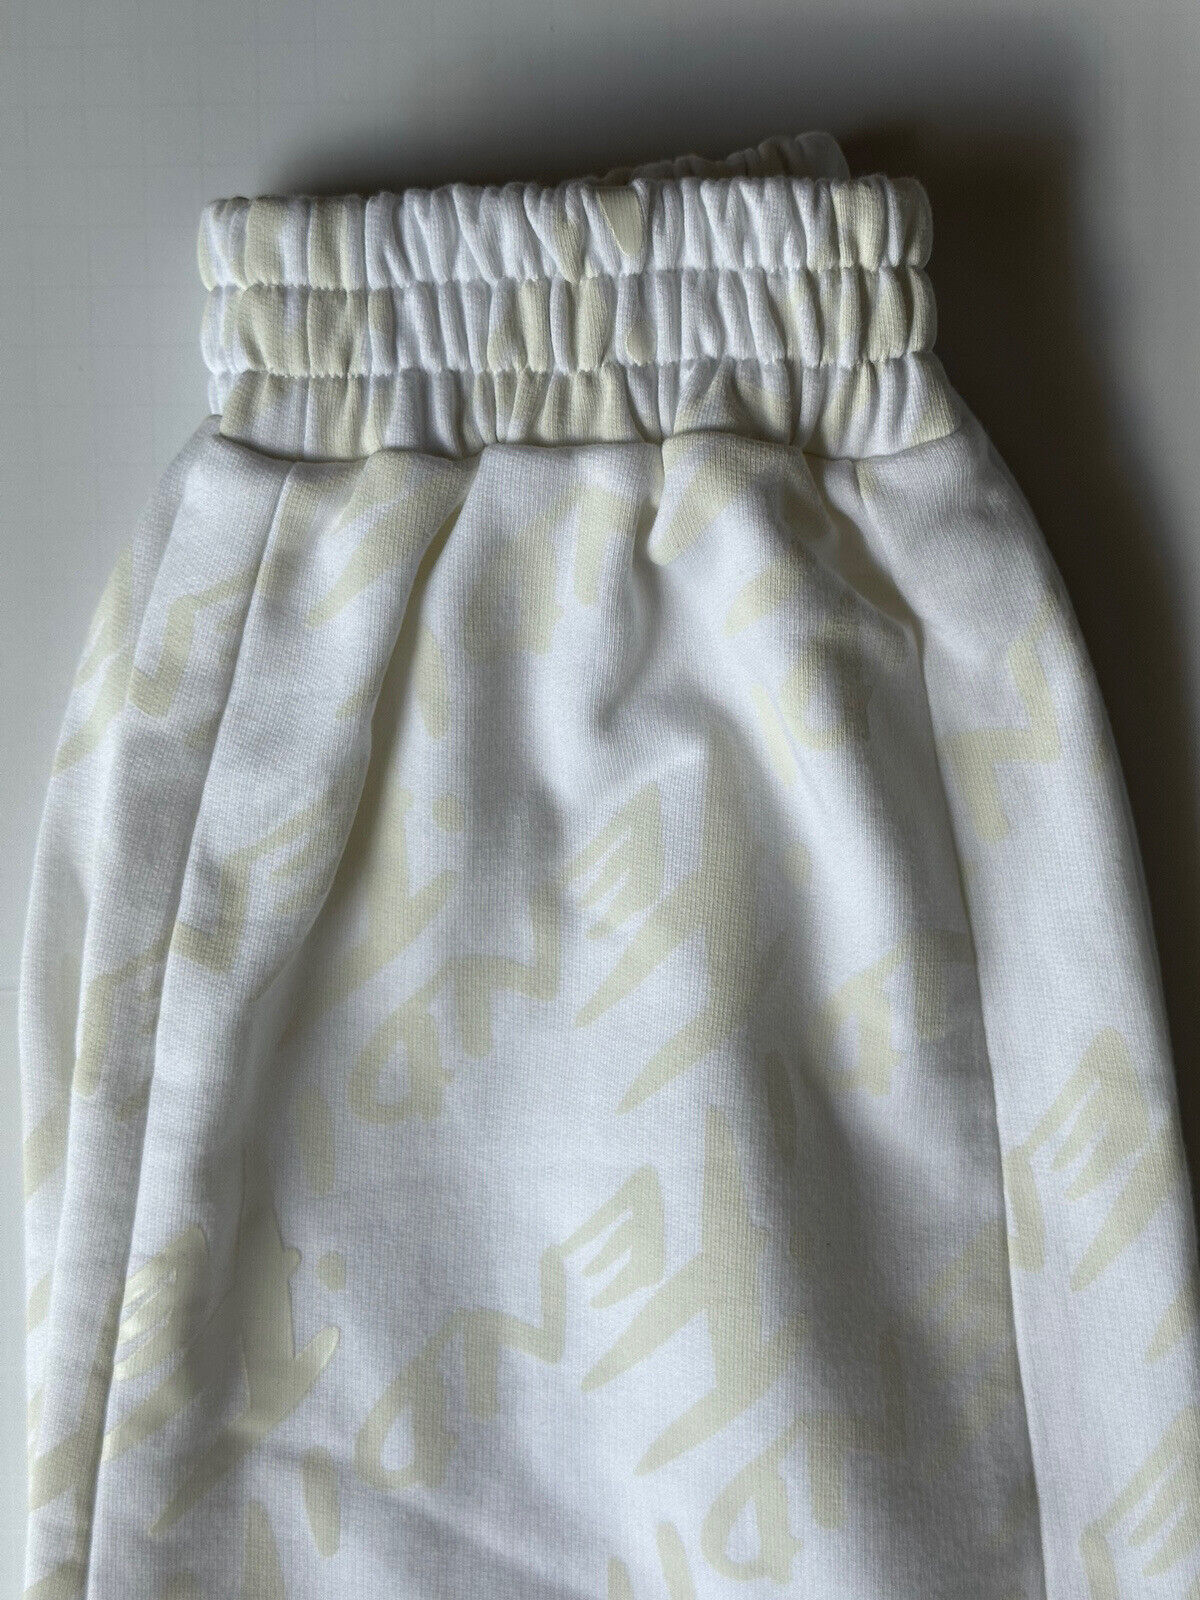 Женские вязаные брюки-джоггеры Fendi молочно-белого цвета с принтом NWT, 950 долларов США, 40 (4 США) IT 